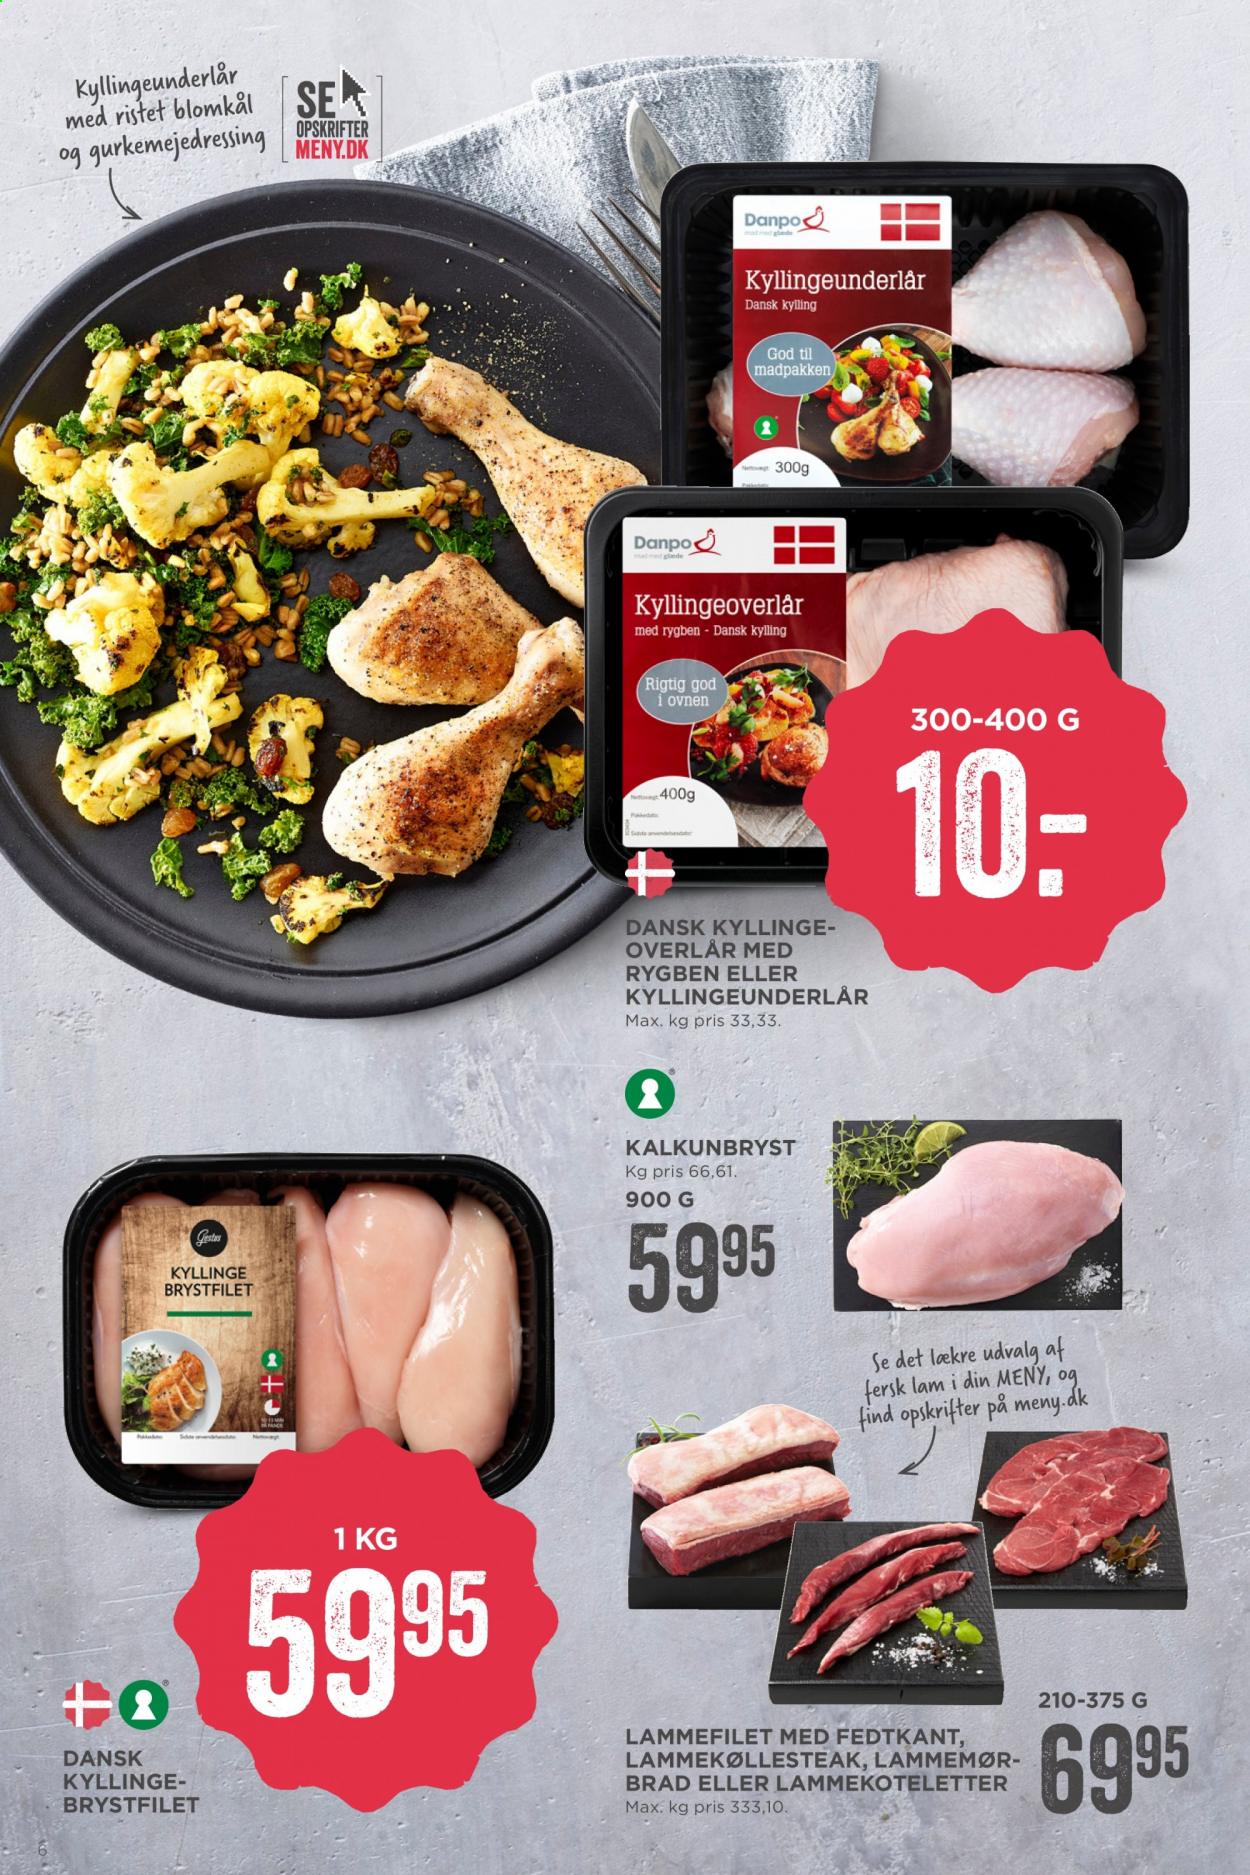 thumbnail - MENY tilbud  - 15.1.2021 - 21.1.2021 - tilbudsprodukter - blomkål, kalkunbryst, kylling, kyllingeoverlår, kyllingeunderlår, lammefilet, lammekoteletter. Side 6.